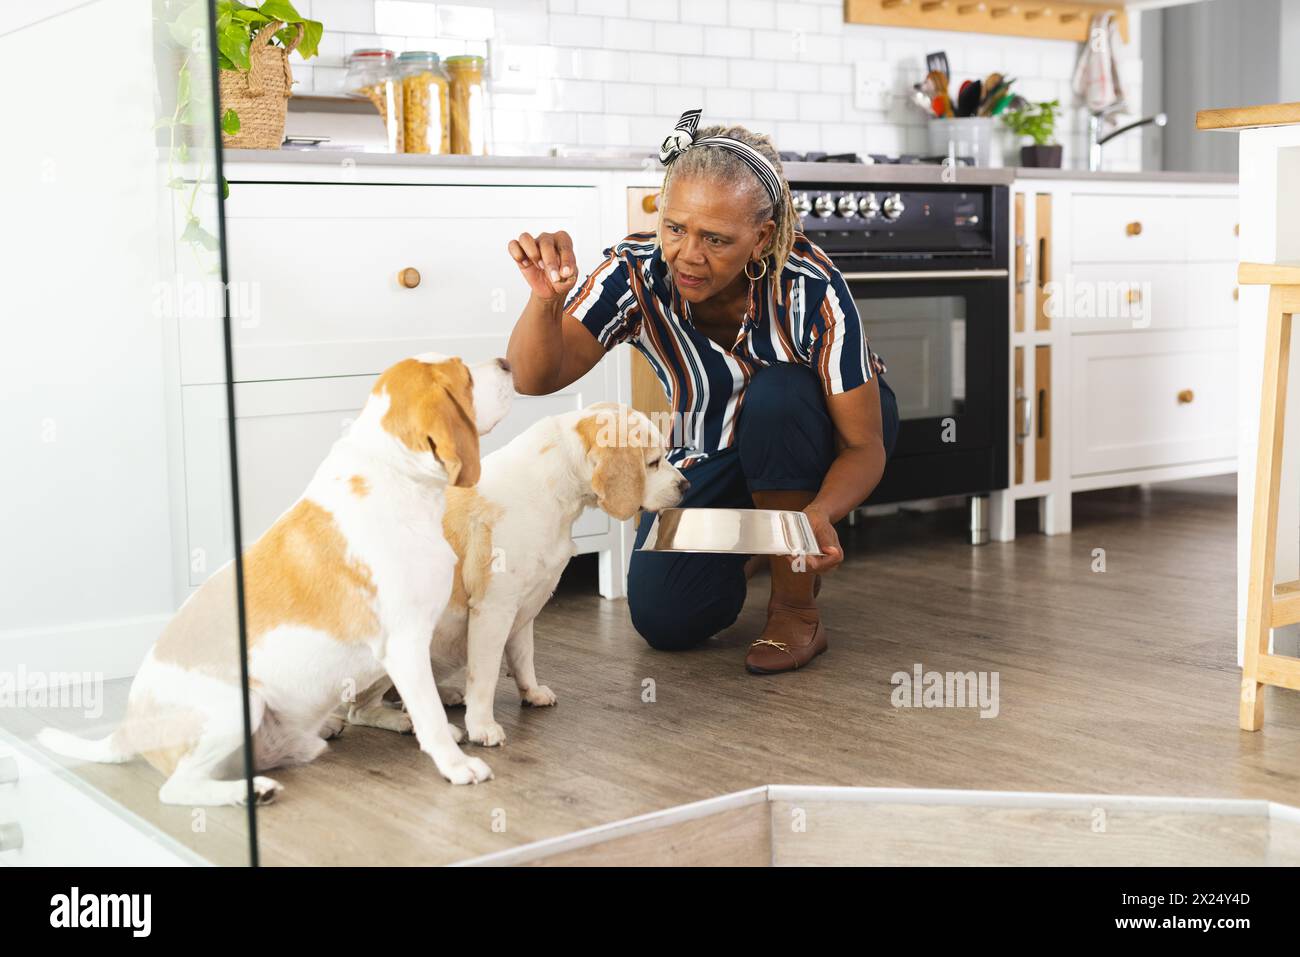 Femme aînée afro-américaine nourrissant deux chiens dans la cuisine à la maison. Elle a les cheveux gris, portant une chemise rayée, agenouillée avec un bol, inaltérée Banque D'Images